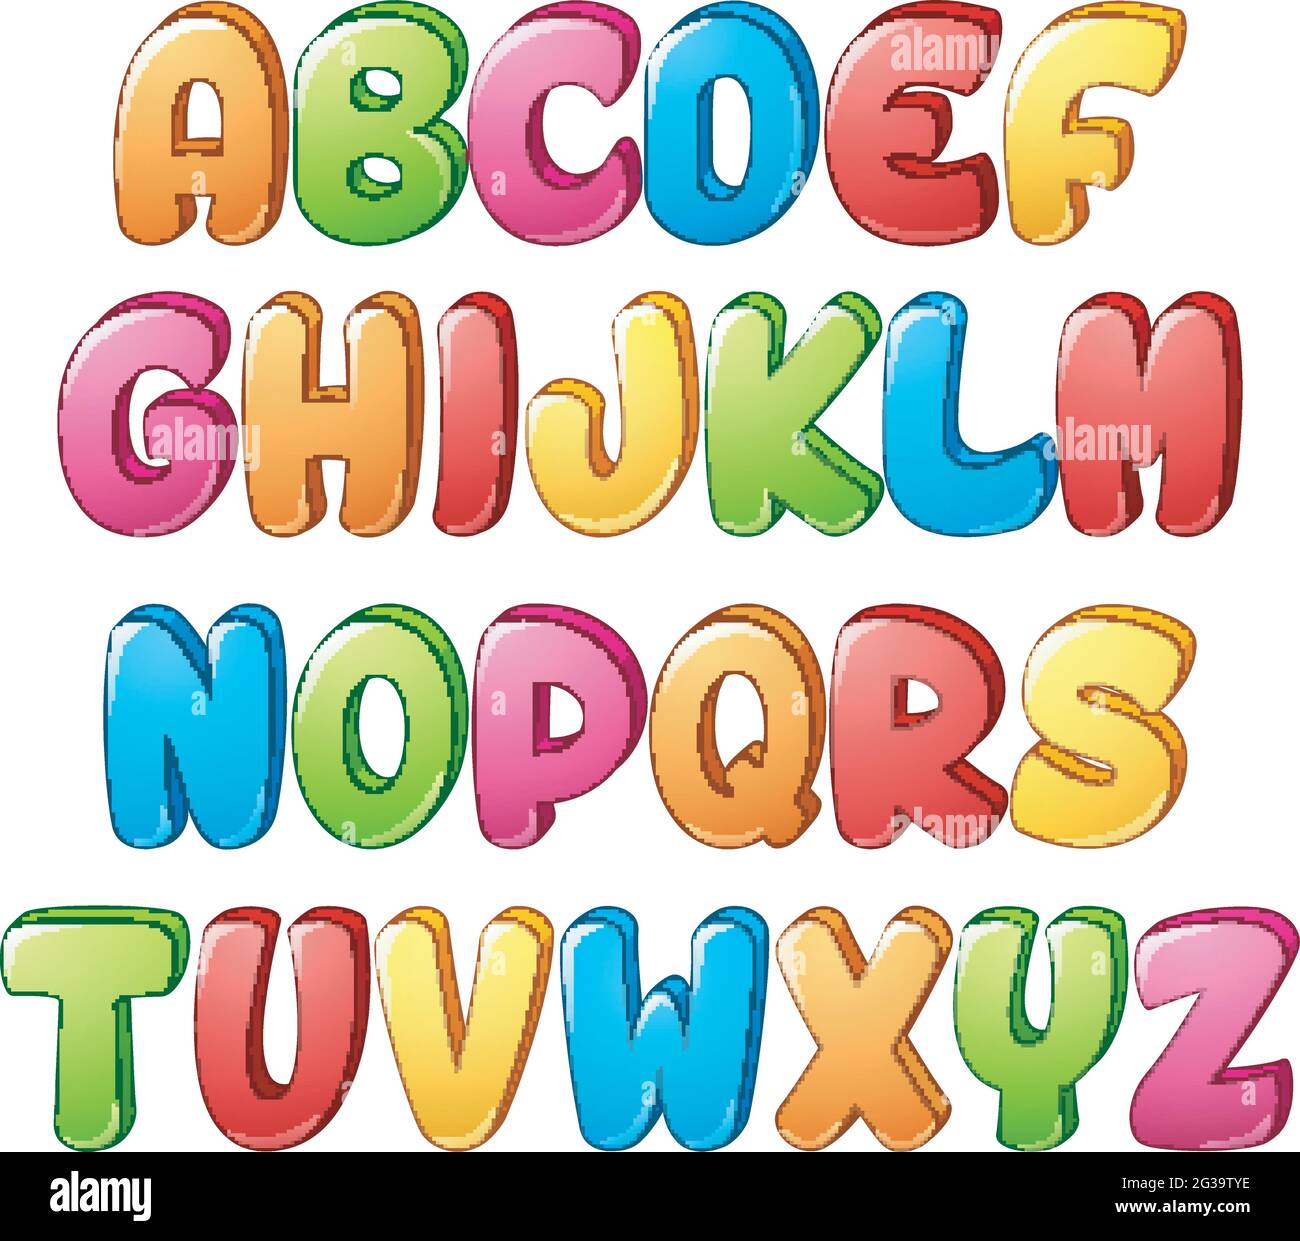 Jeu d'alphabets colorés sur fond blanc Illustration de Vecteur